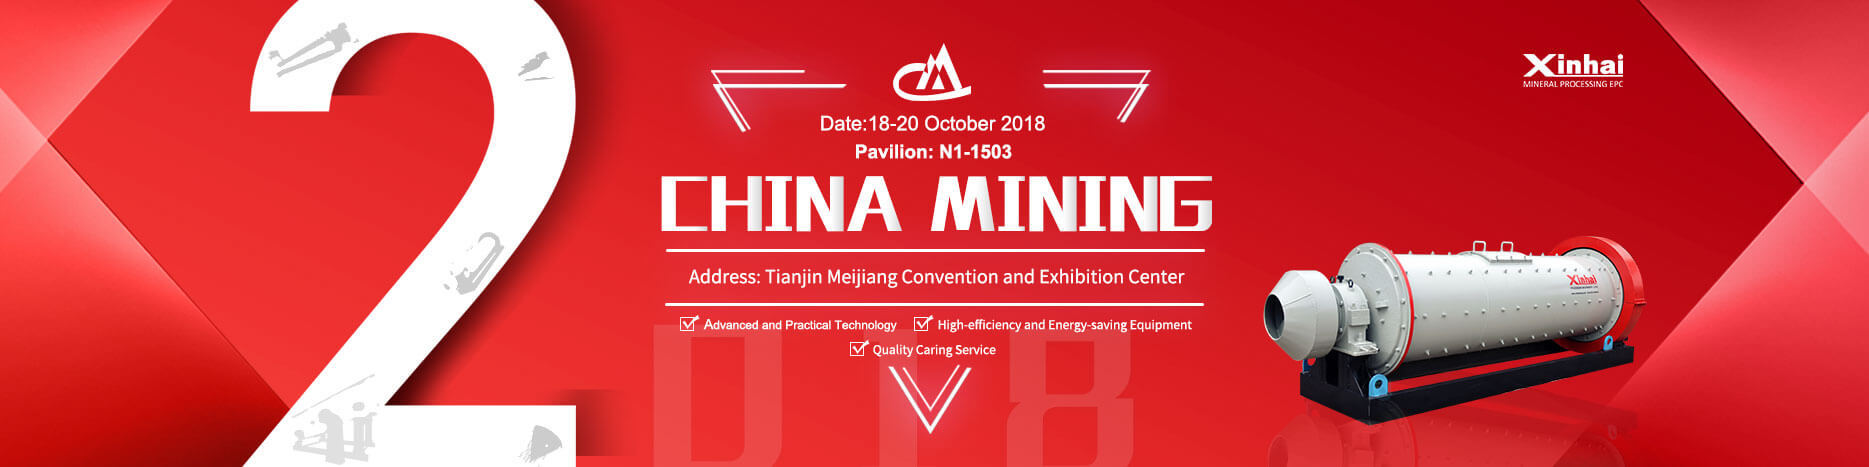 xinhai China Mining 2018